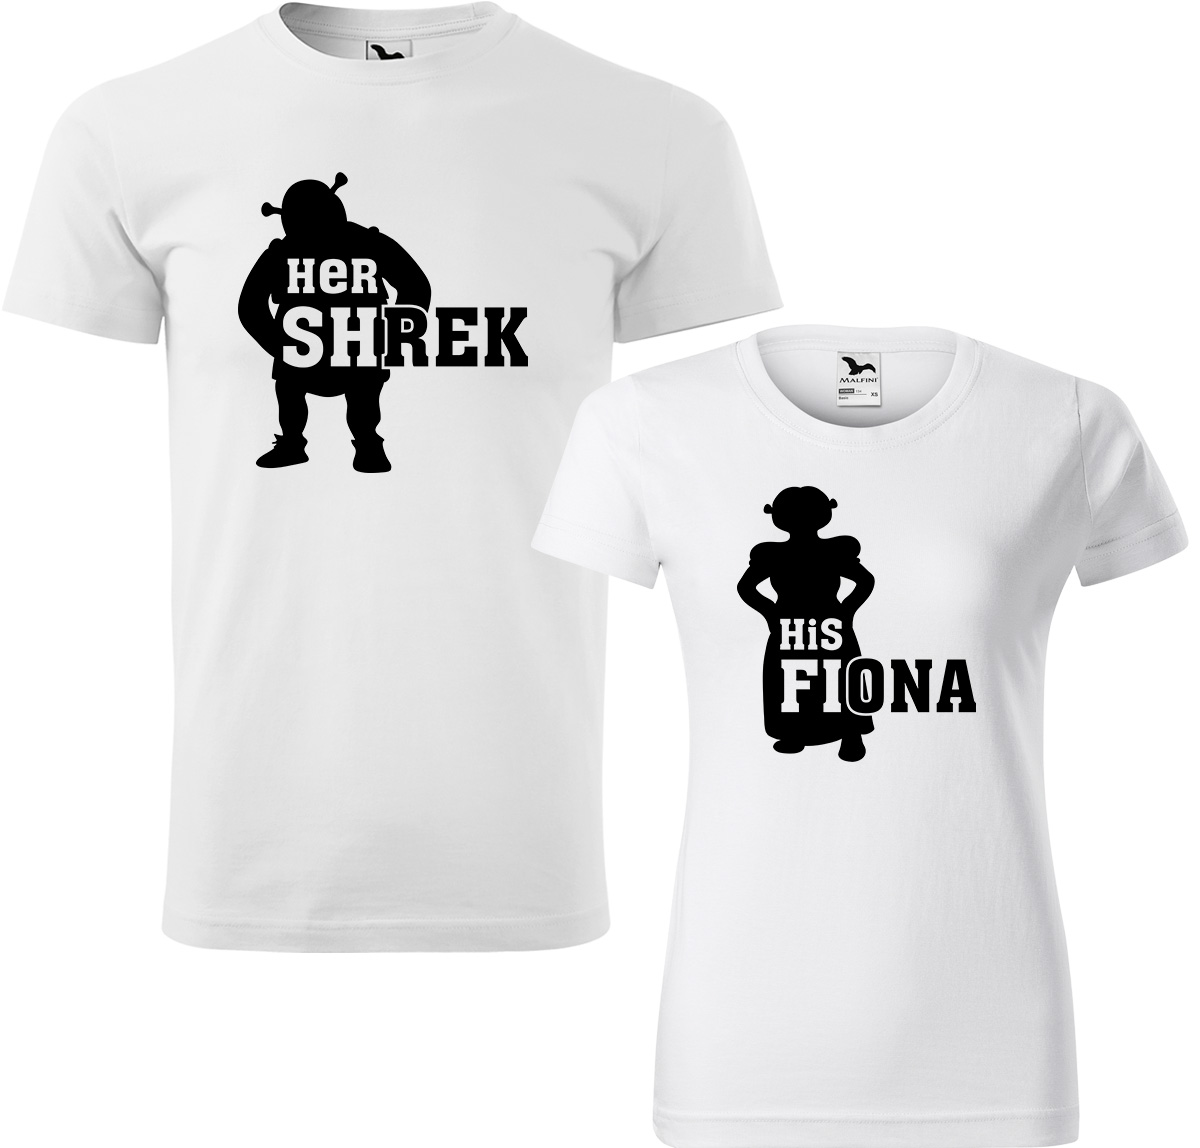 Trička pro páry - Shrek a Fiona Barva: Bílá (00), Velikost dámské tričko: L, Velikost pánské tričko: L